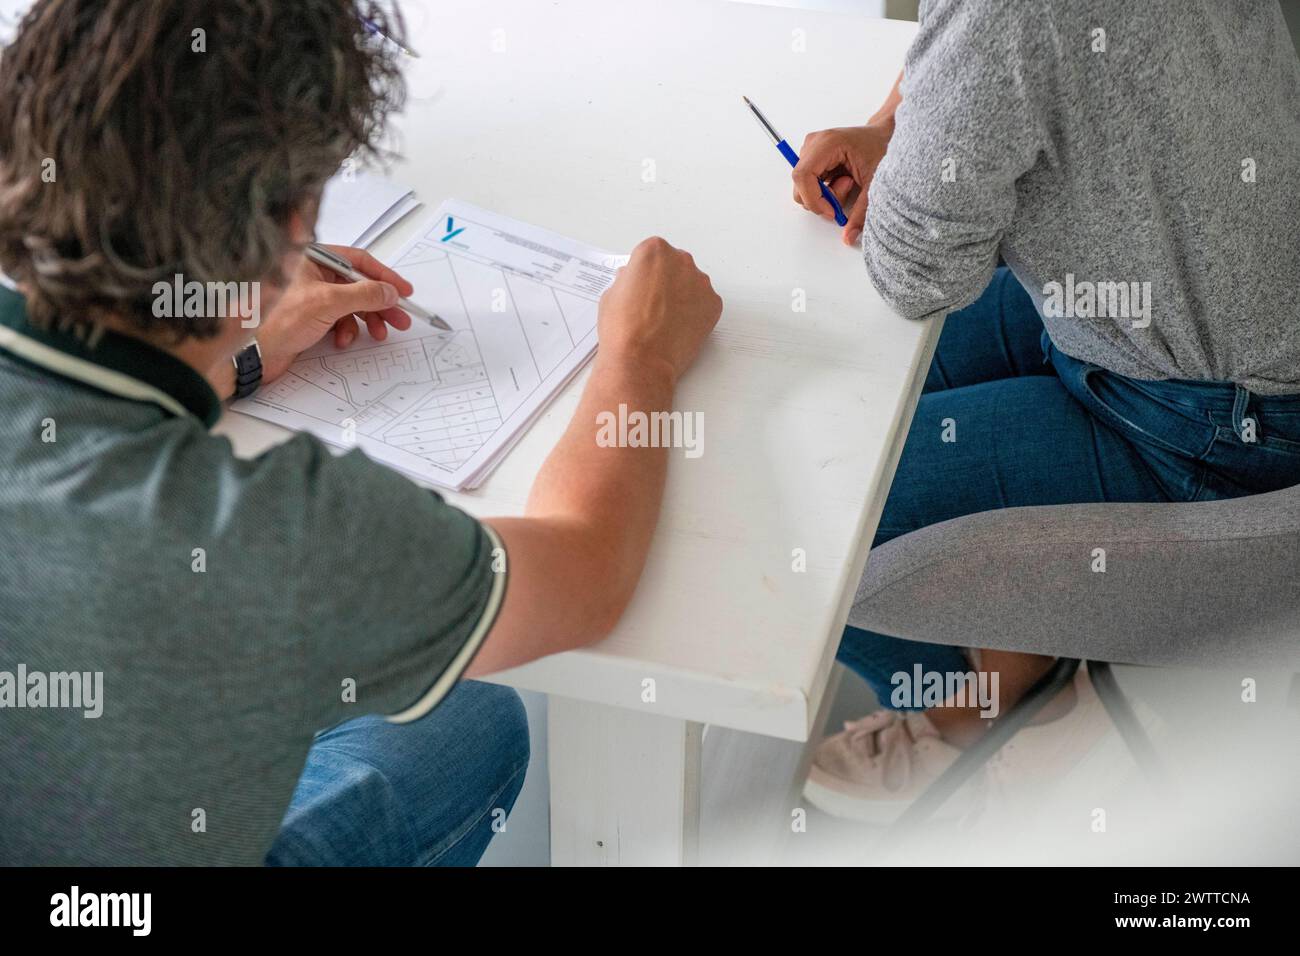 Deux personnes collaborant sur un projet à une table blanche. Banque D'Images